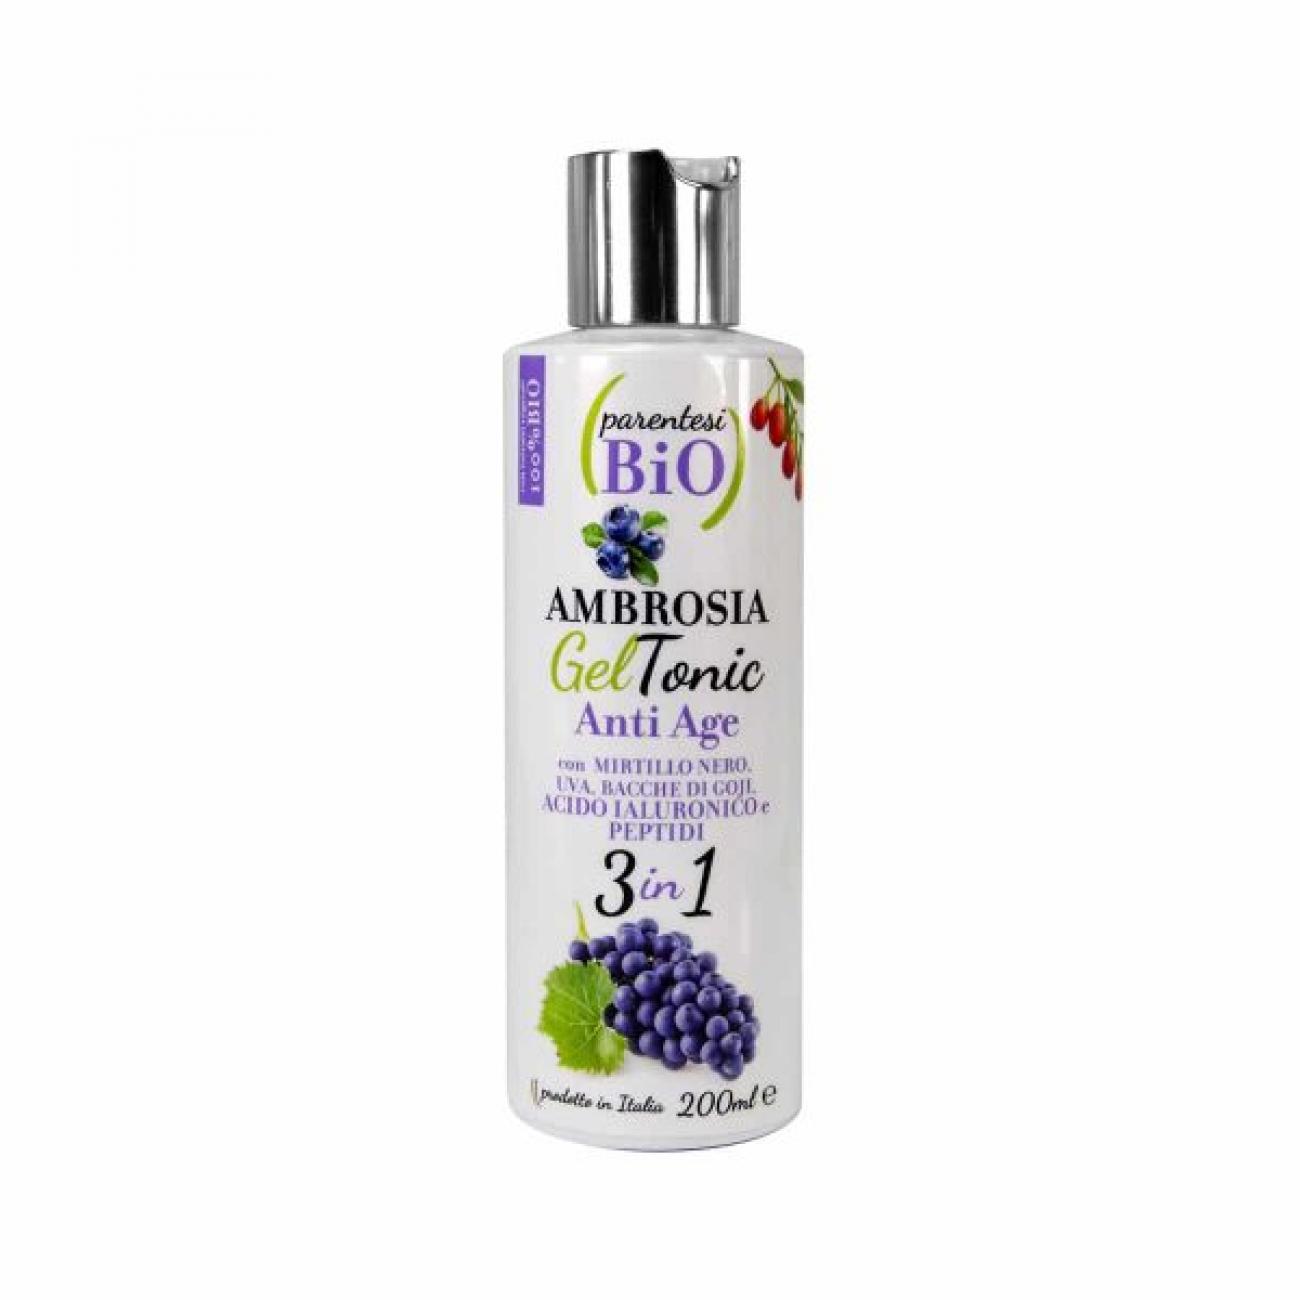 Ambrosia gel tonic anti age 200ml